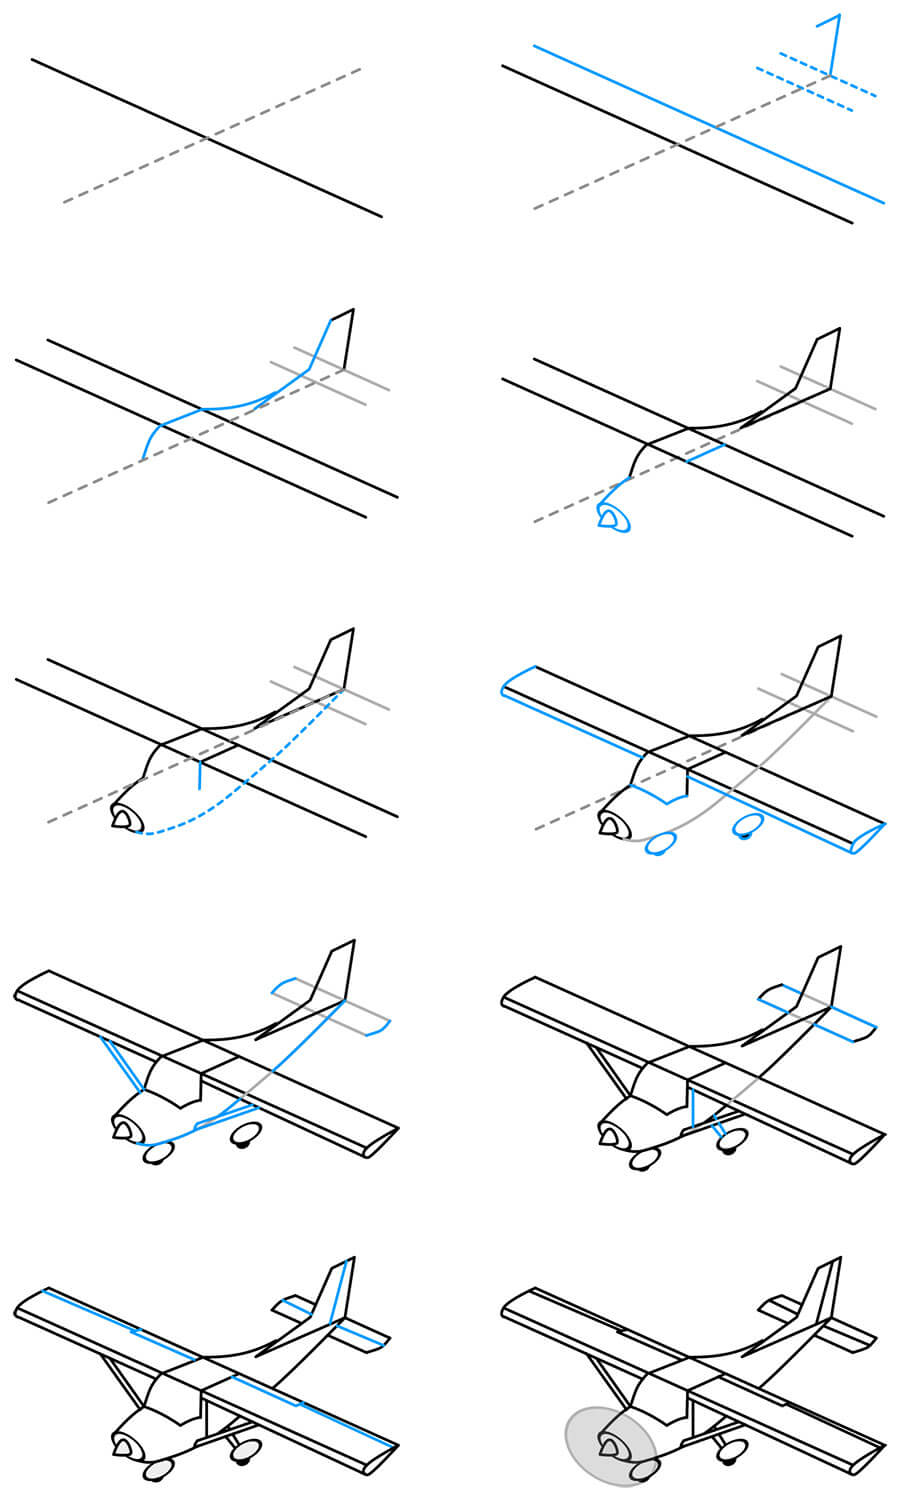 Ein einmotoriges Flugzeug zeichnen ideen